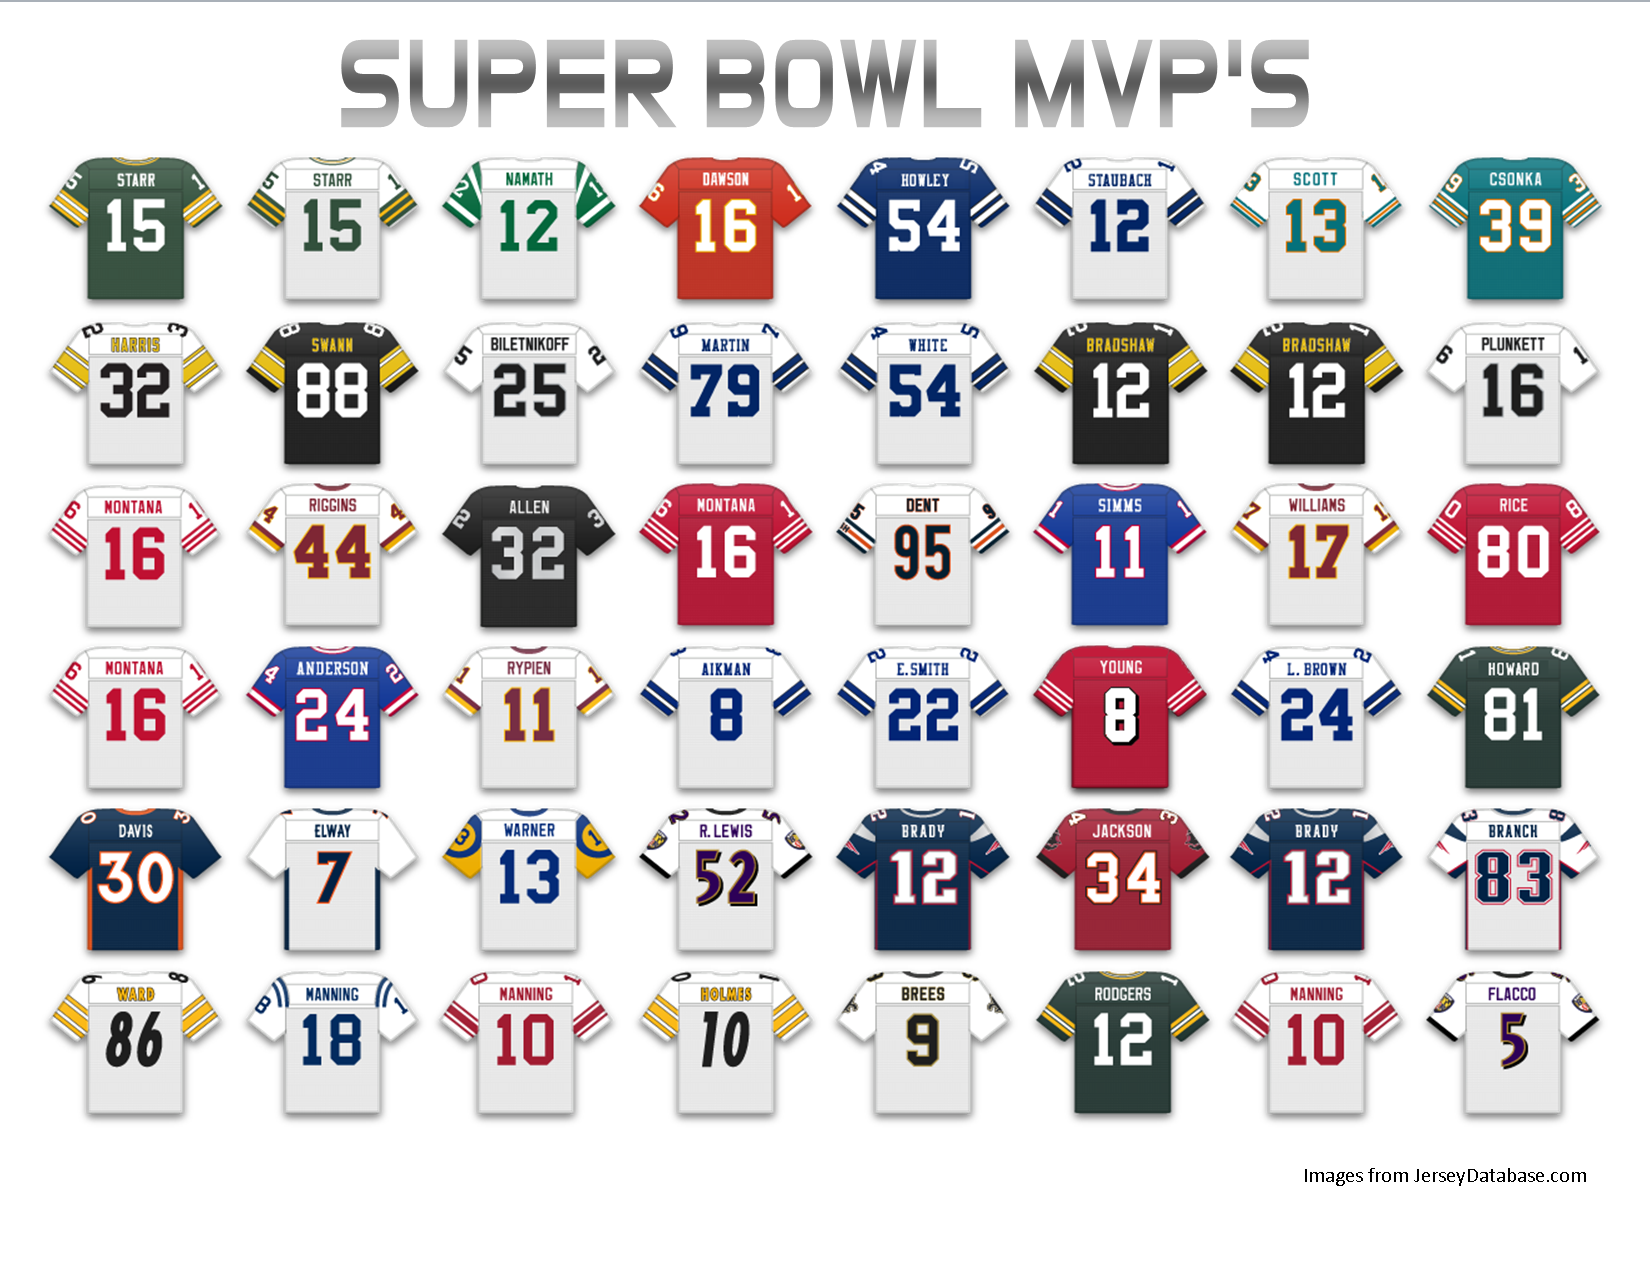 [NFL] Tutti gli MVP del Super Bowl, per ruolo e per decade